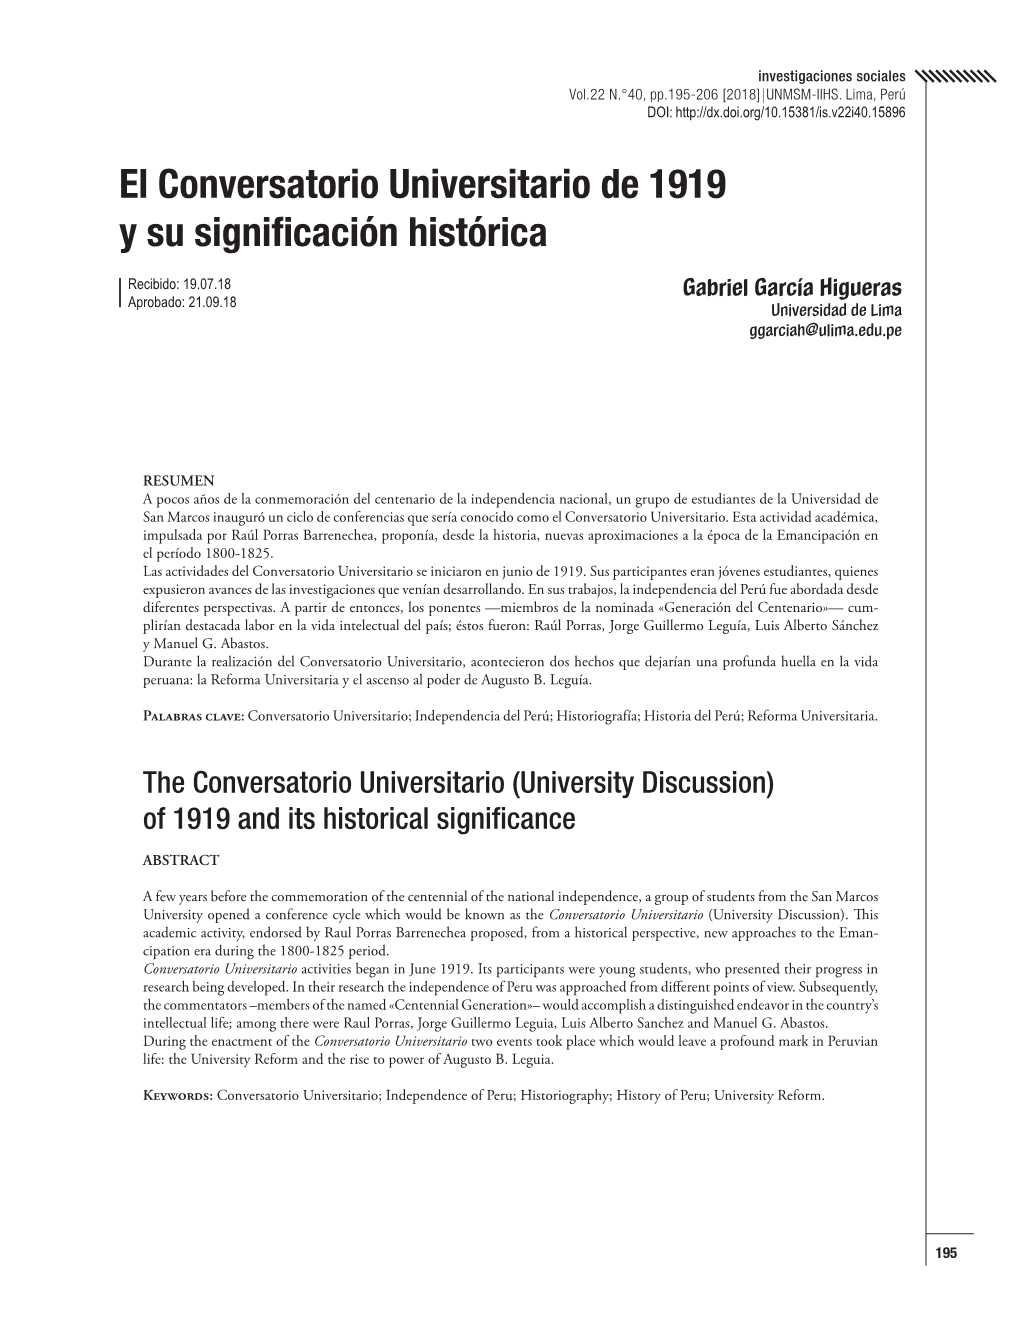 El Conversatorio Universitario De 1919 Y Su Significación Histórica